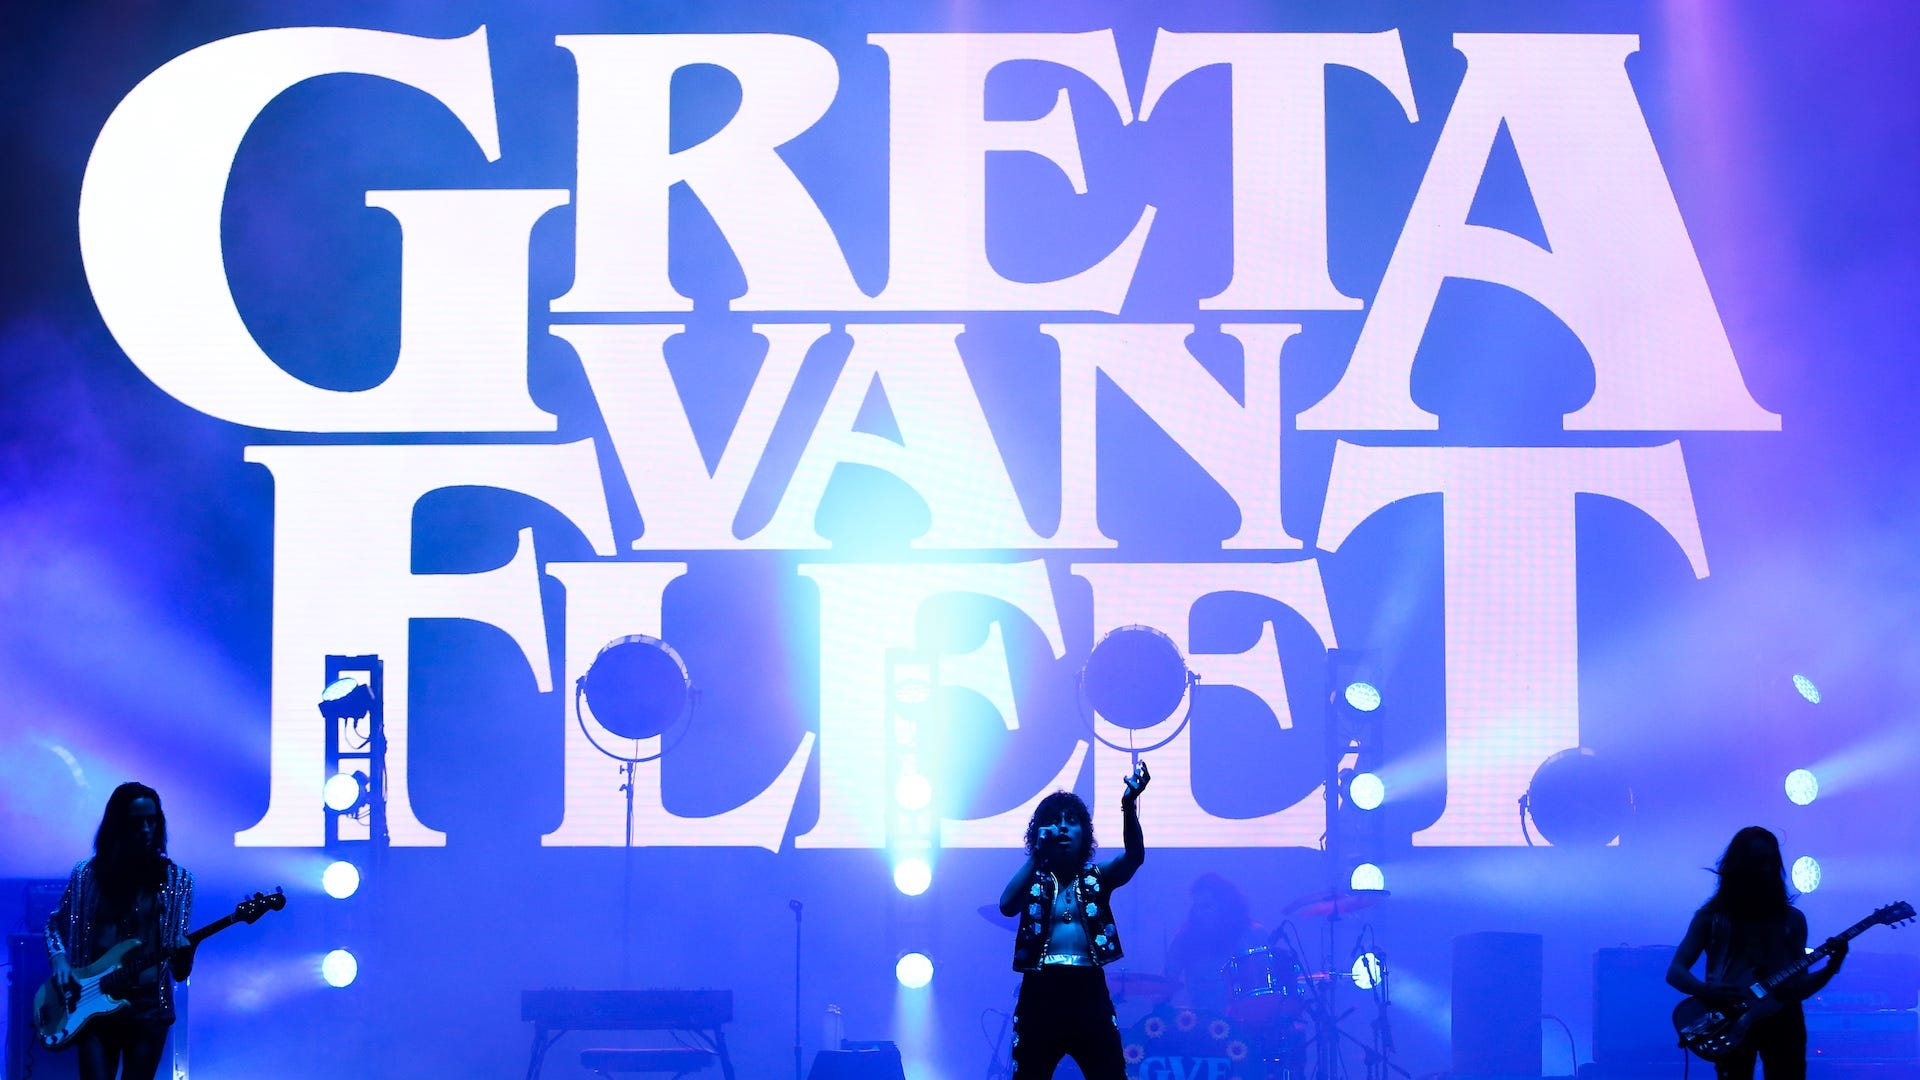 Greta Van Fleet, New album release, Rock music comeback, Music industry, 1920x1080 Full HD Desktop